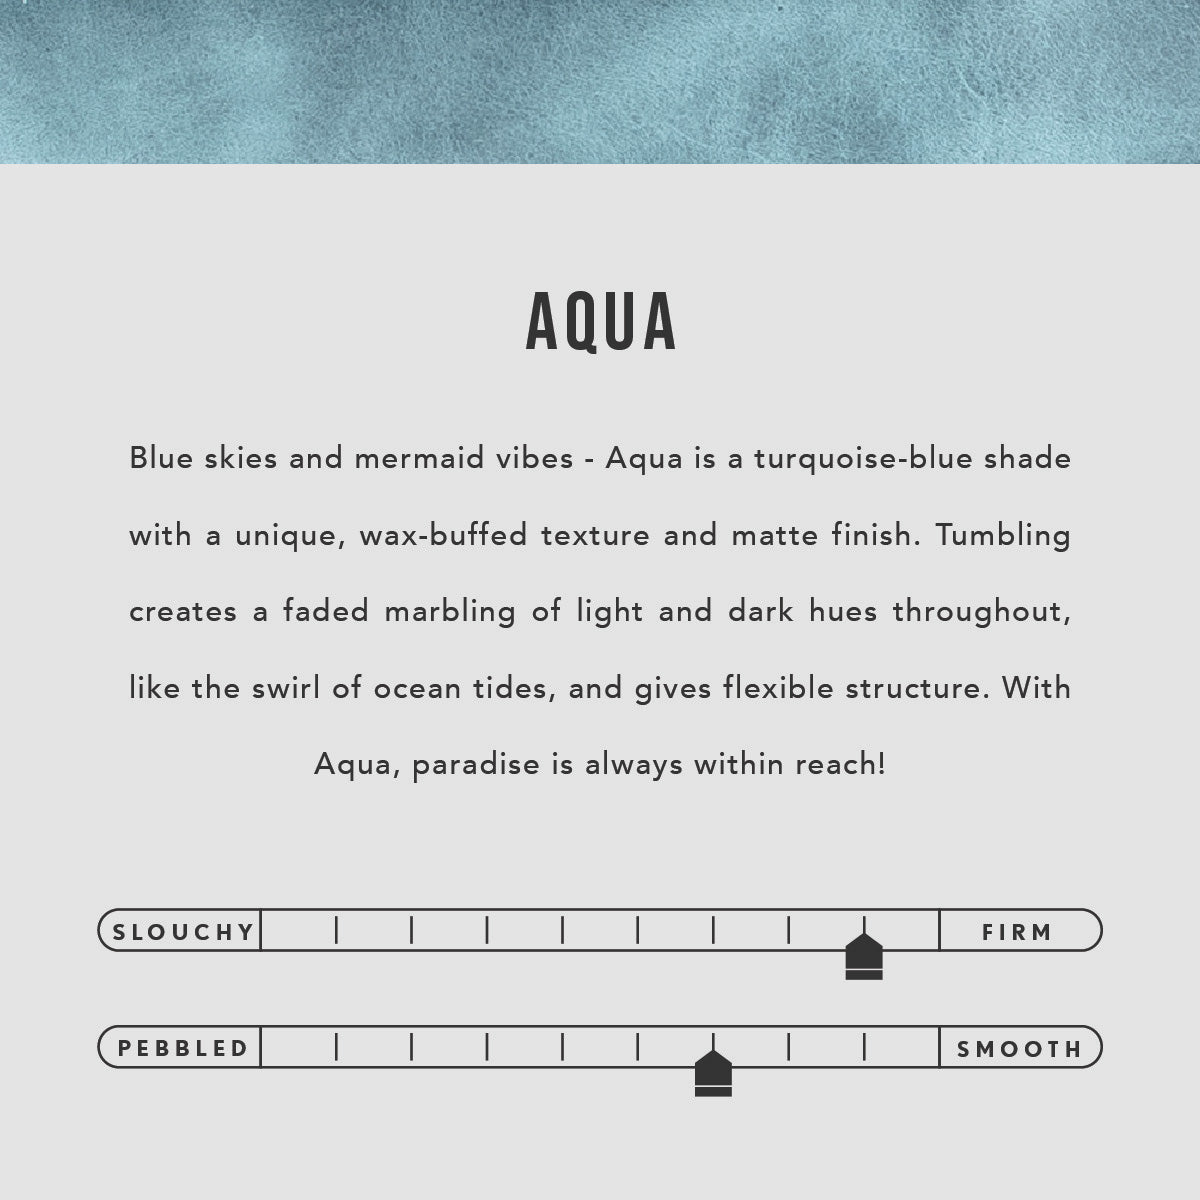 Aqua | infographic